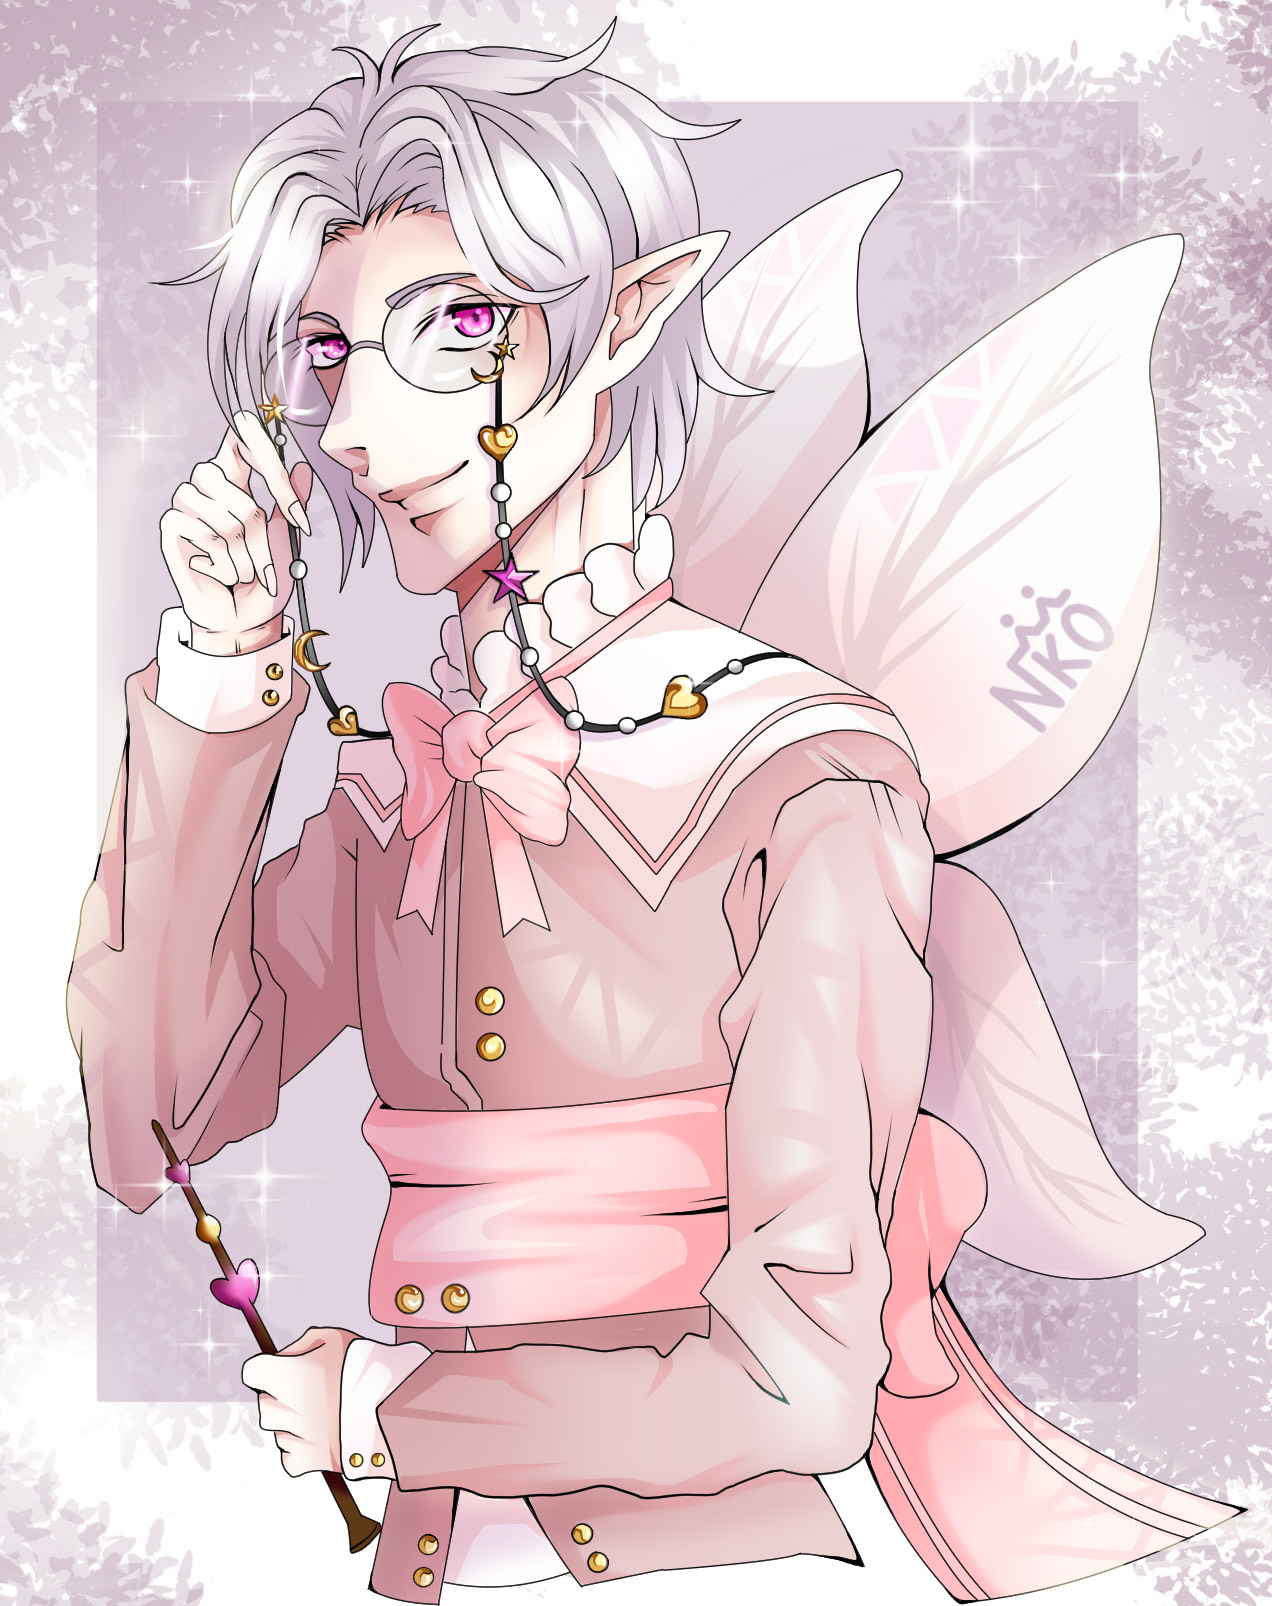 Fairy Professor